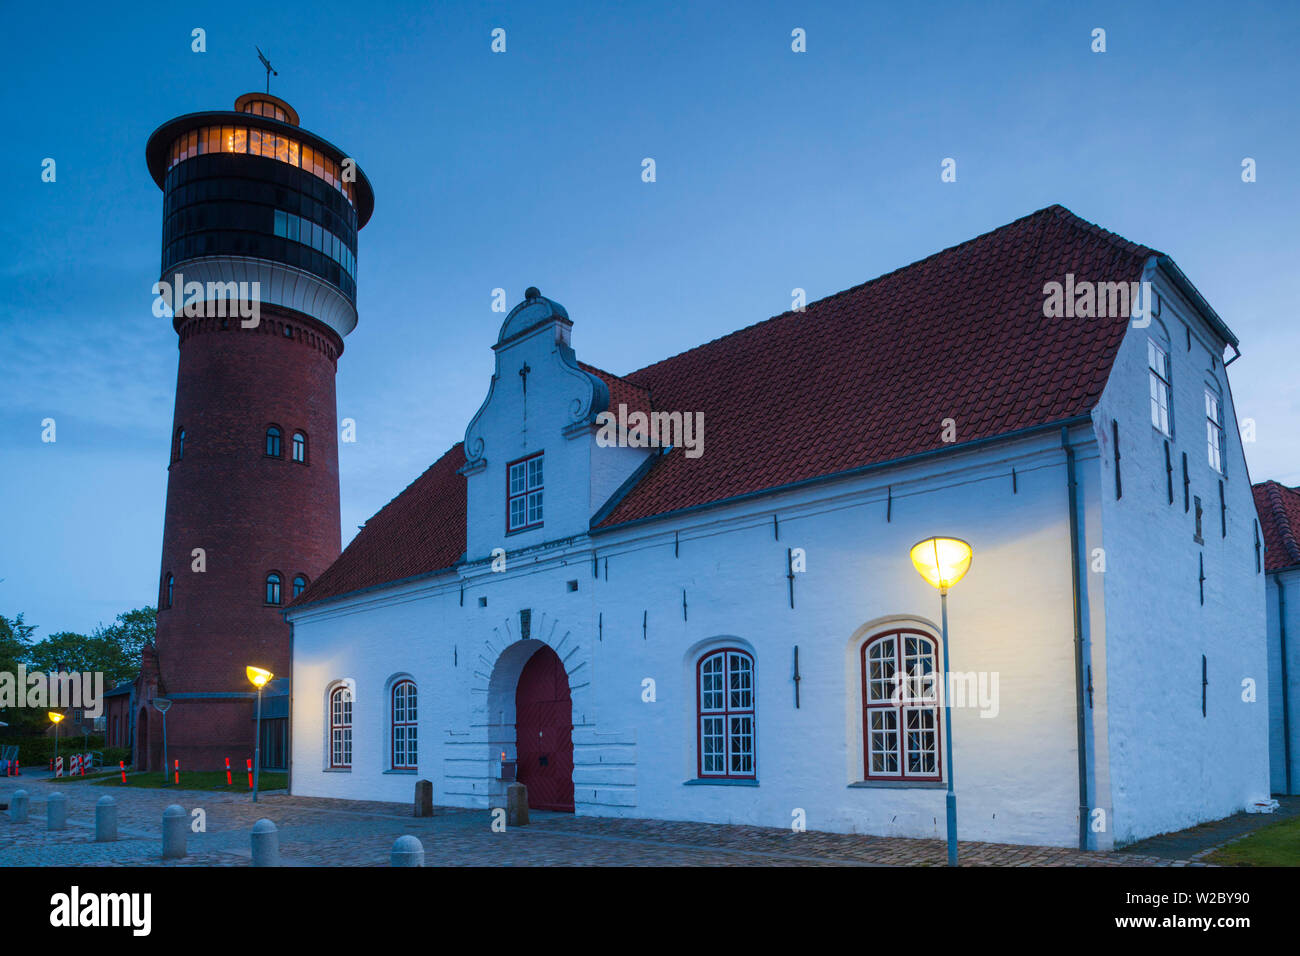 Dänemark, Nordjütland, Tønder, Dänemarks älteste Stadt Tønder Museum und Vandtarnet Wasserturm, Dämmerung Stockfoto